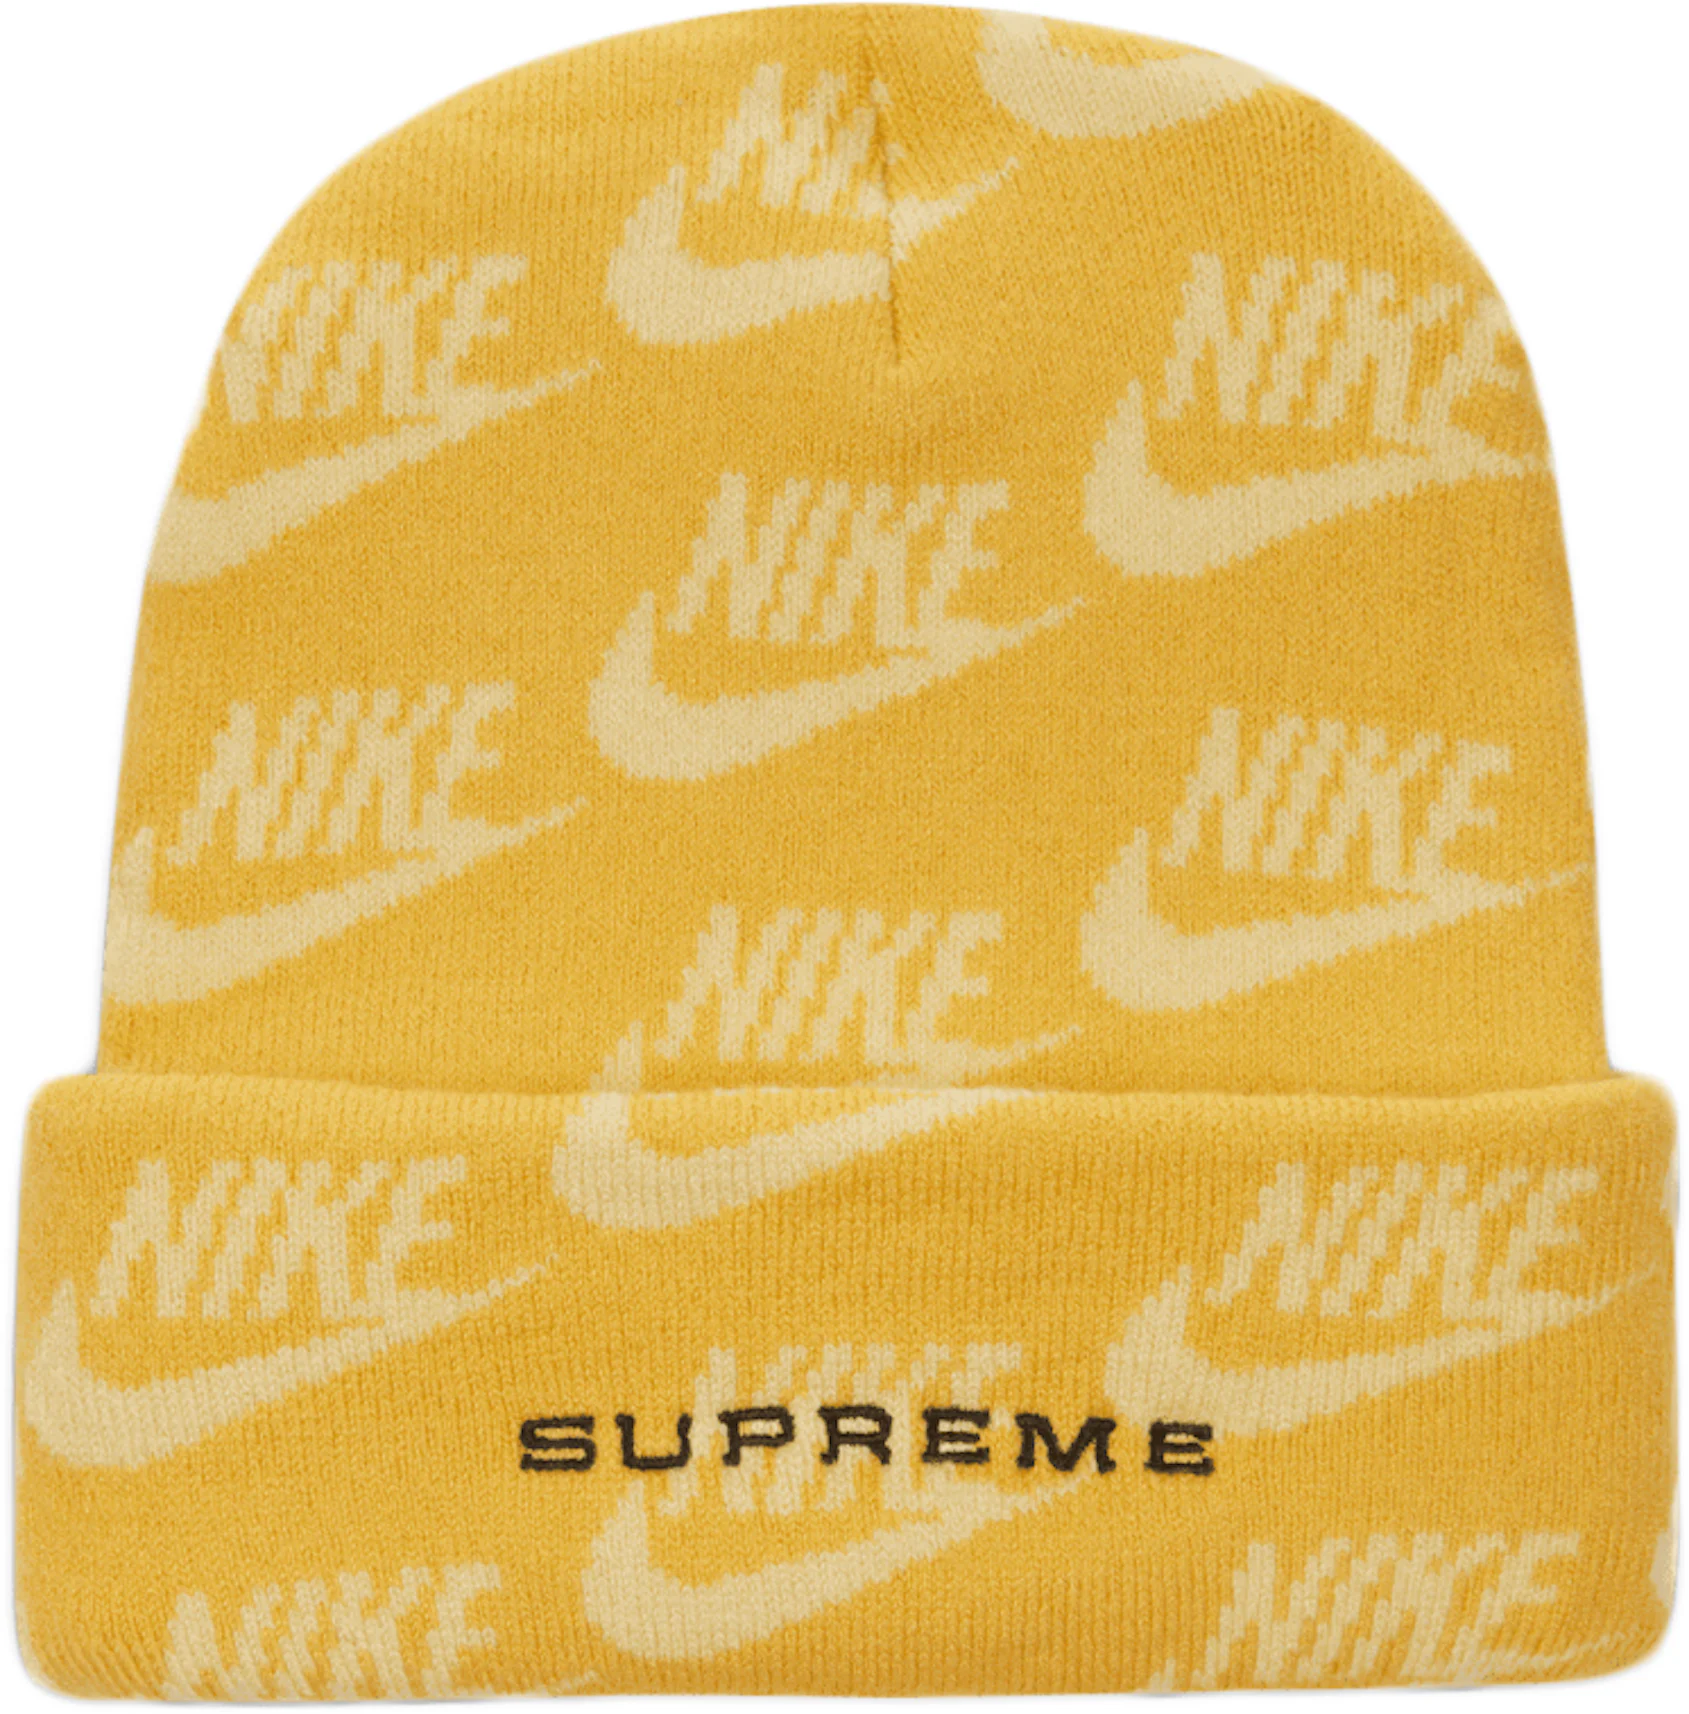 Supreme Nike Jacquard Logos Beanie Pale Yellow